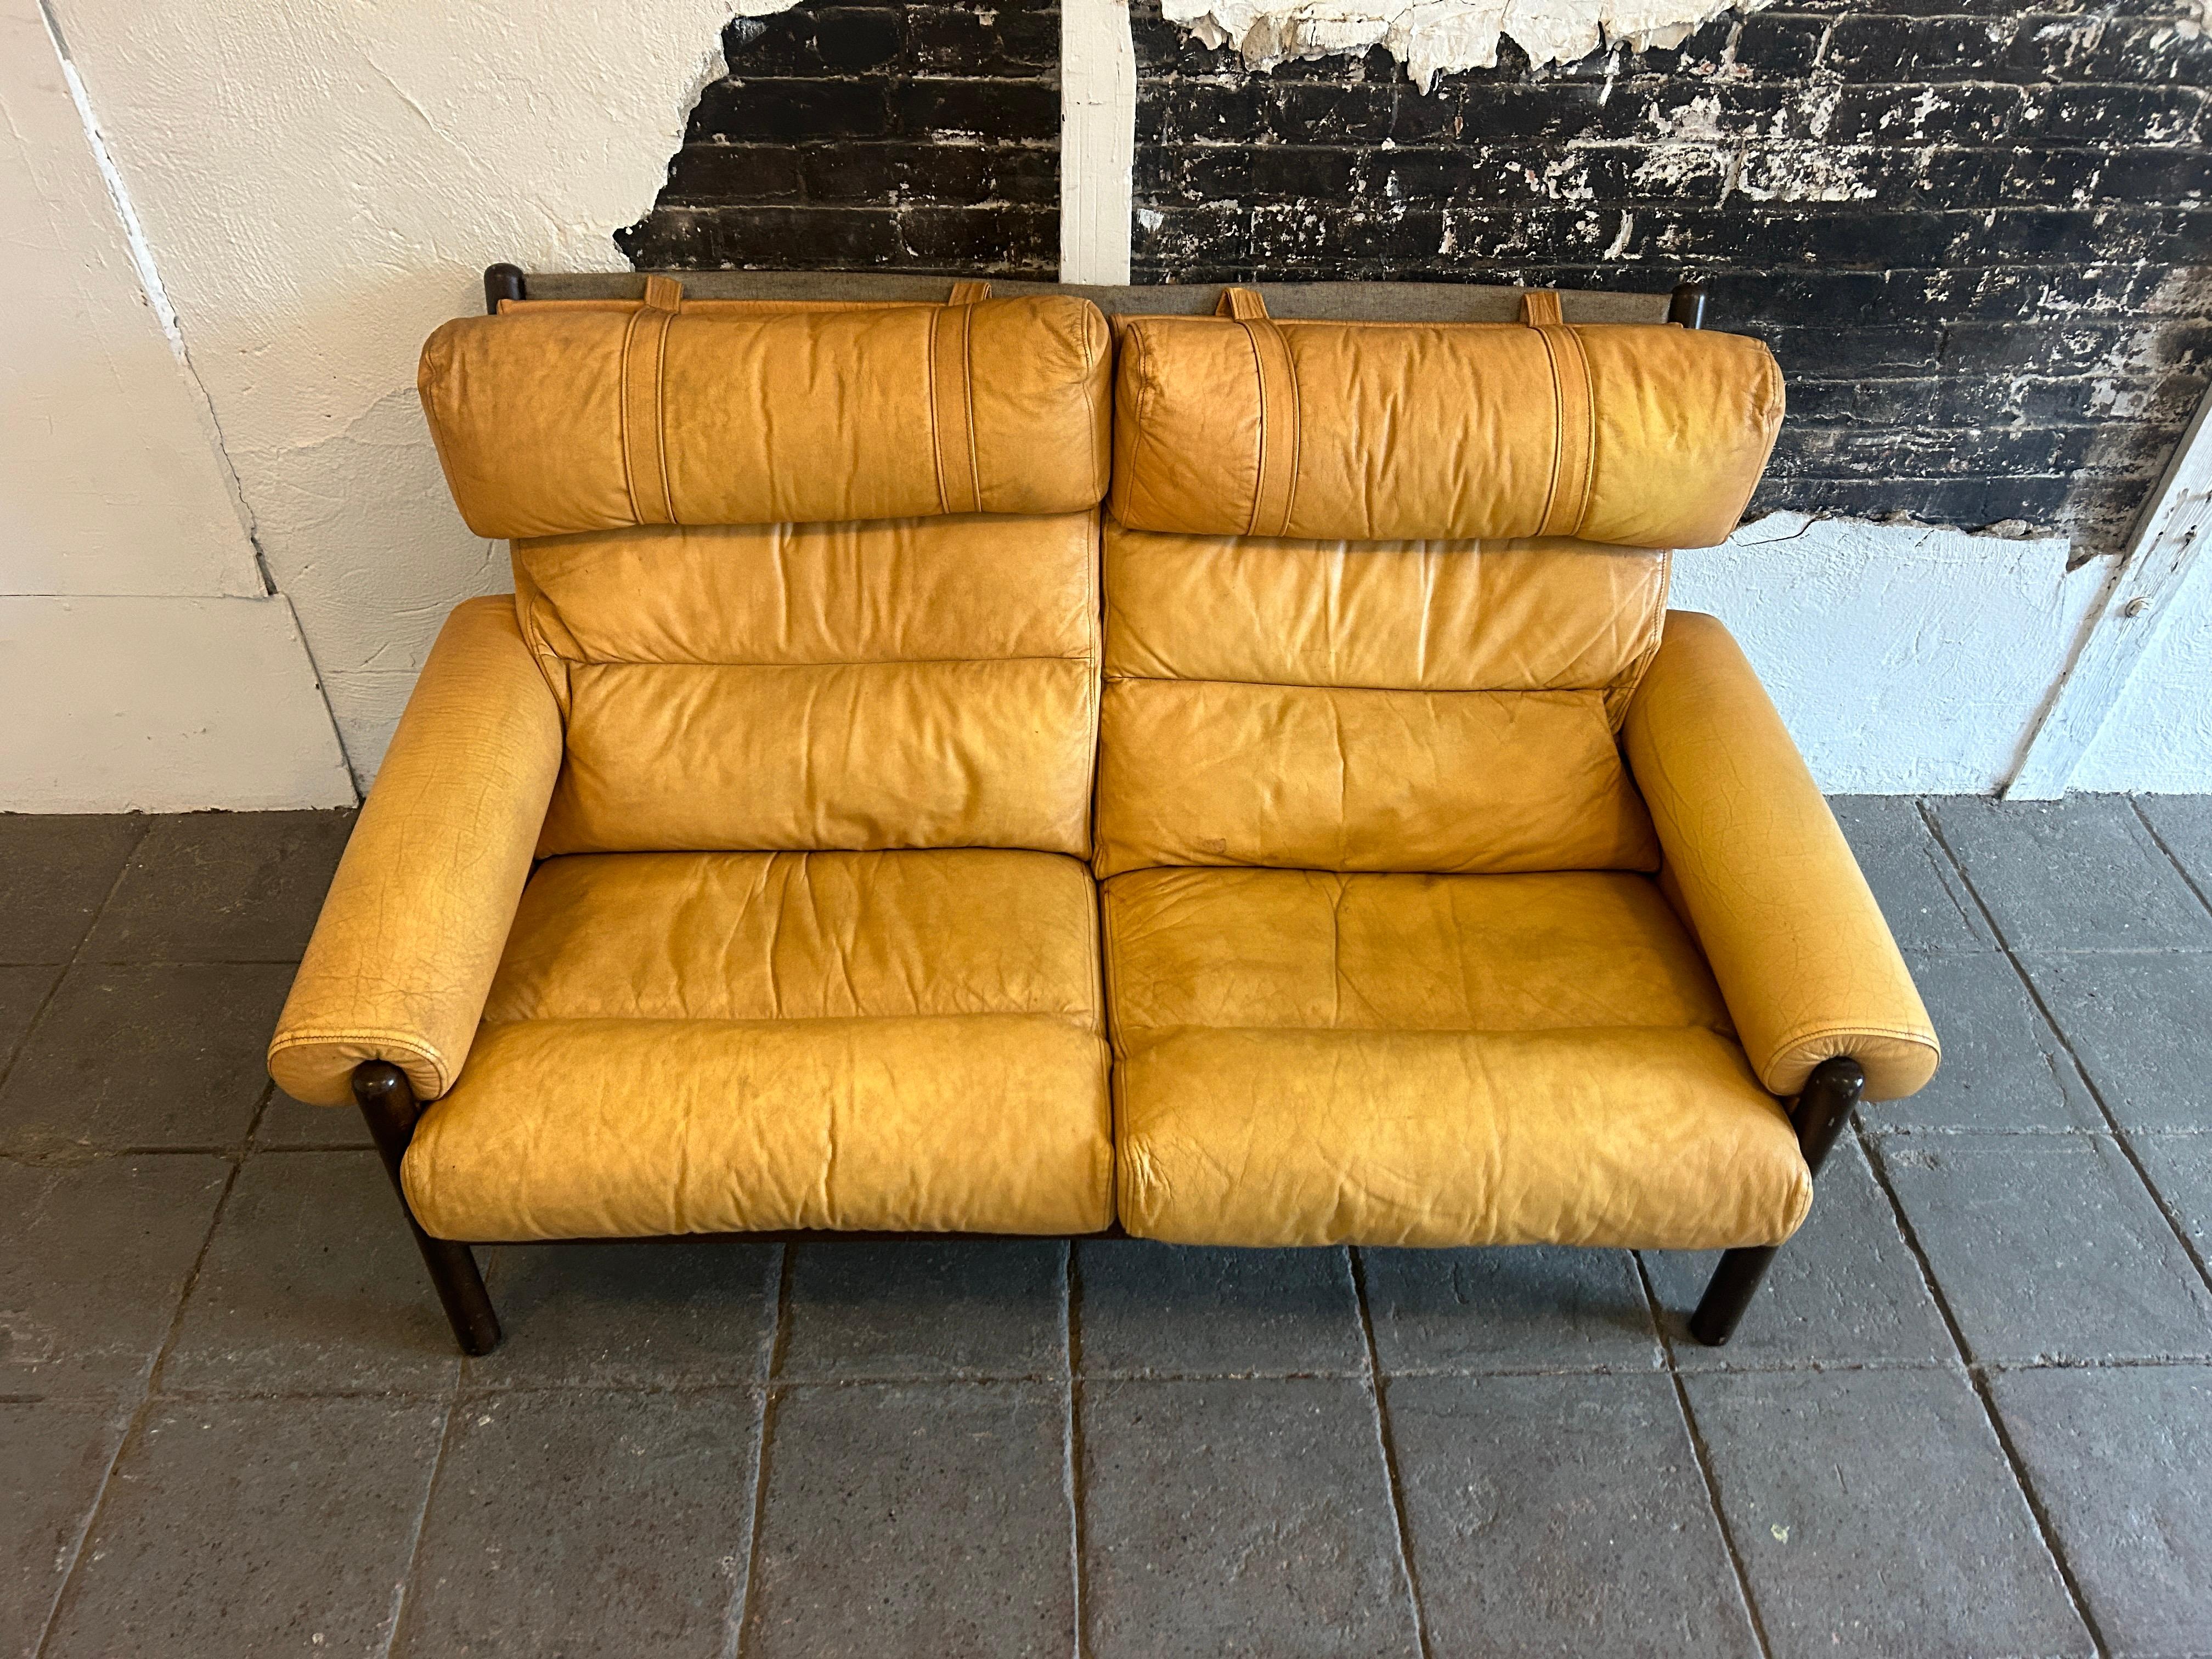 Dans le style de Arne Norells Safari Loveseat sofa Swedish Design

Petit canapé 2 places en teck et cuir jaune/tan de style moderne du milieu du siècle. Il dispose de 2 sièges avec un appui-tête en oreiller très confortable. Le cuir présente des